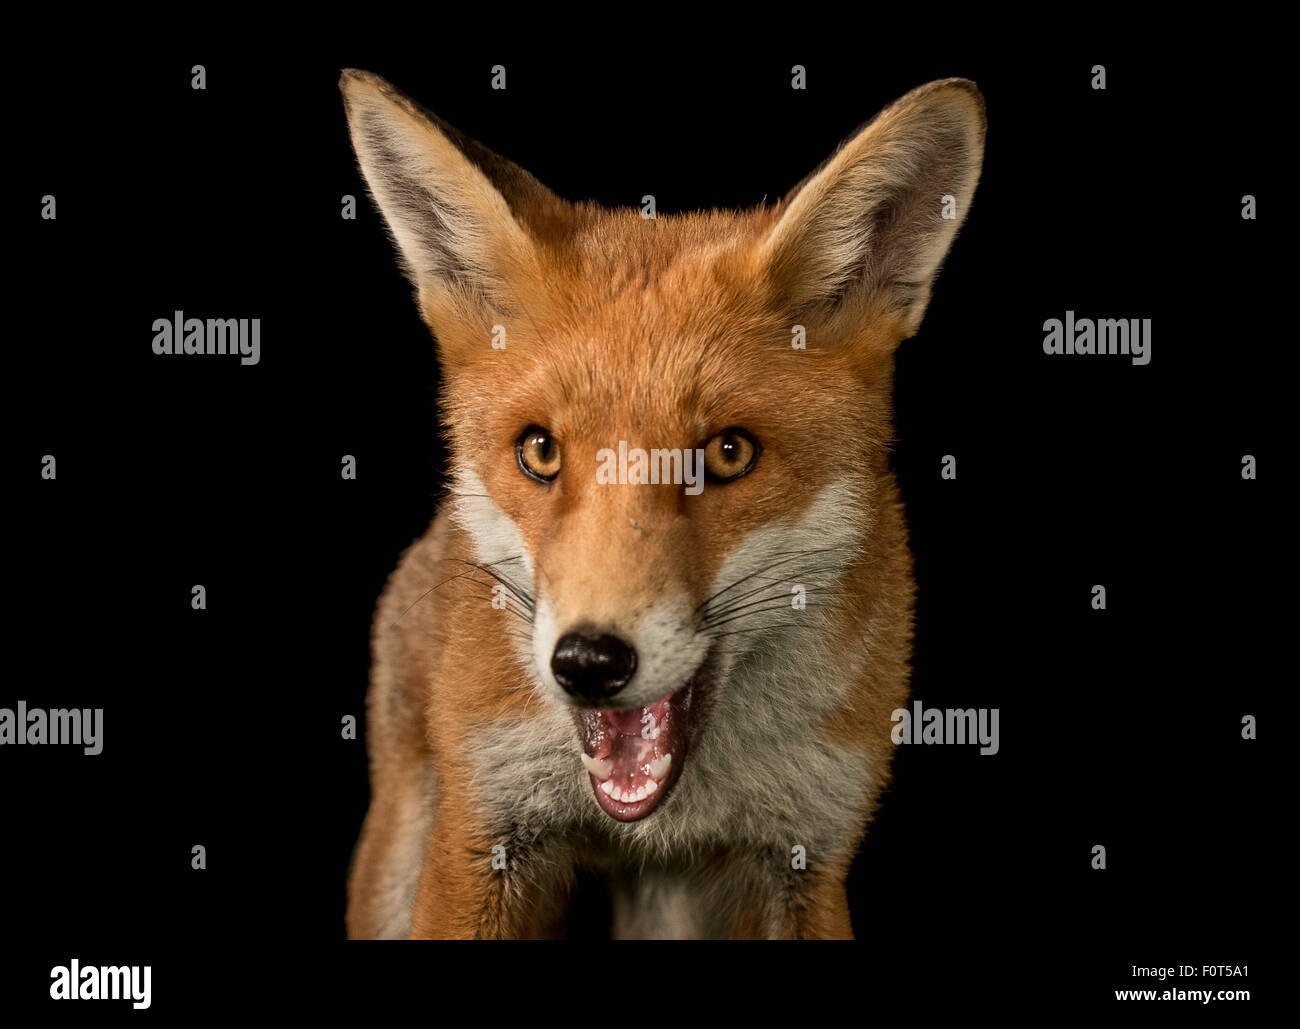 Red fox night shot Stock Photo